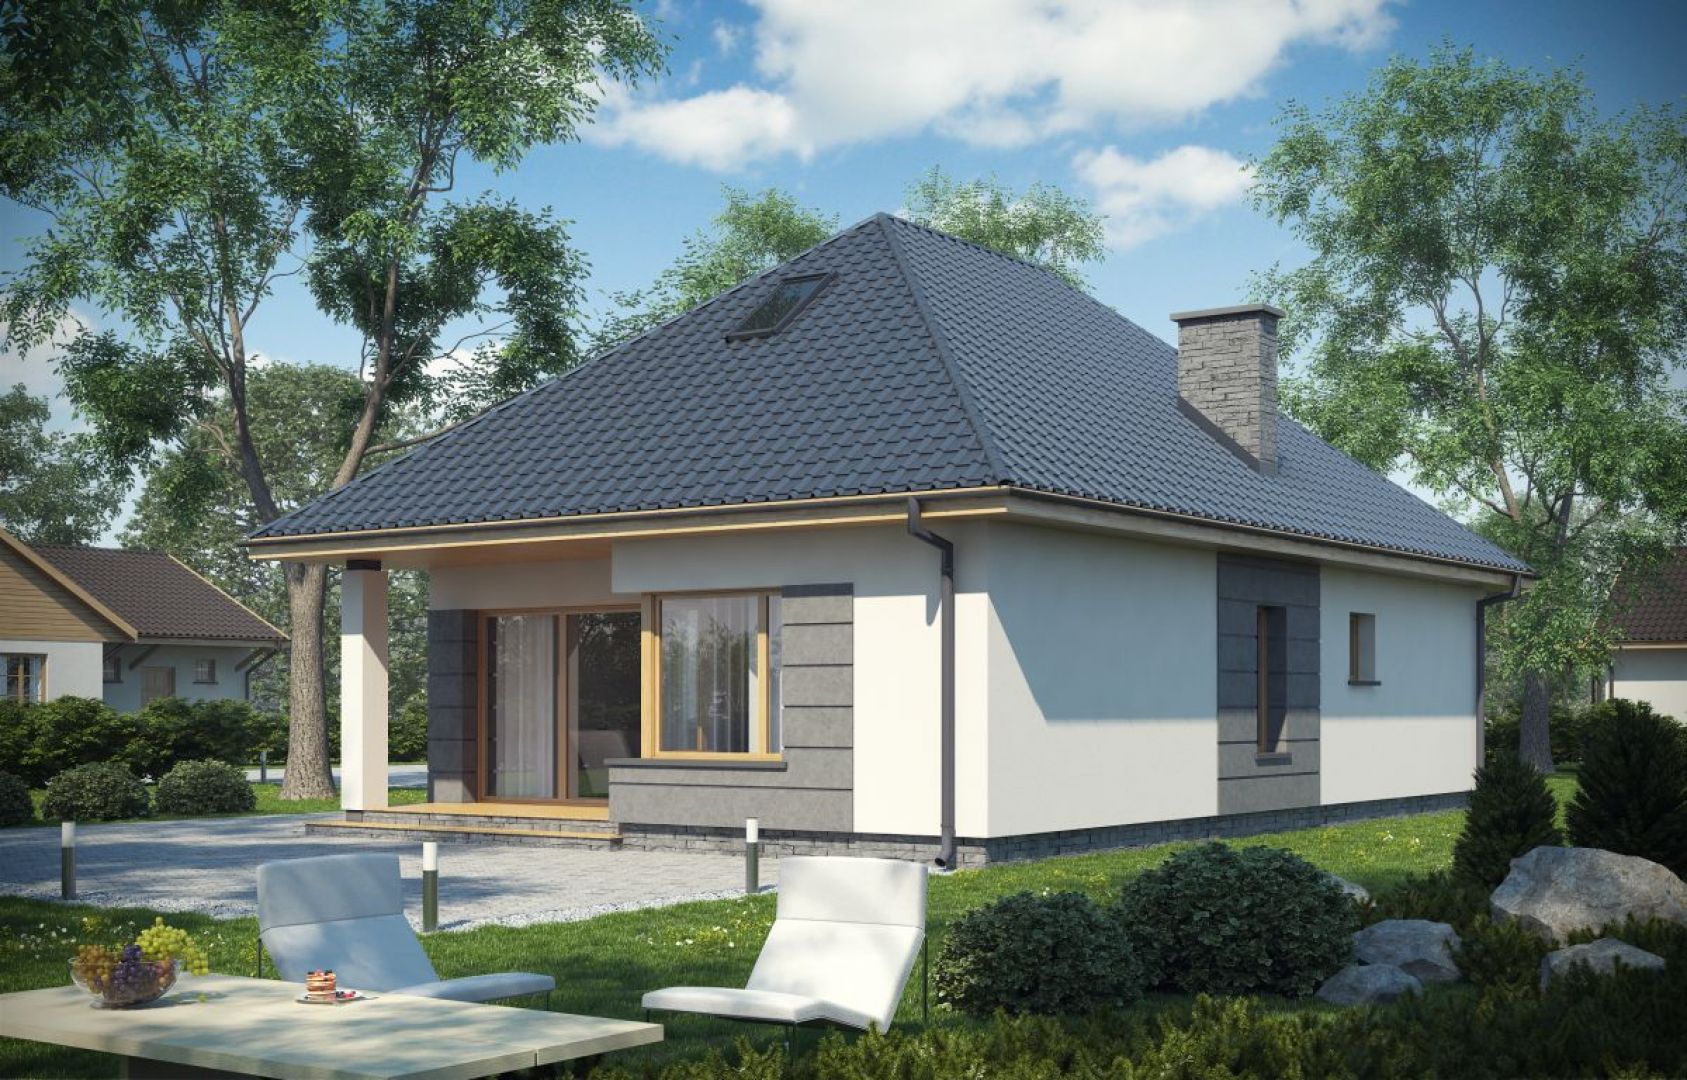 Mały domek parterowy o powierzchni użytkowej 61,64 m² ze strychem. Autor: arch. Krzysztof Wolski, Proj. D148B, Fot. Artinex